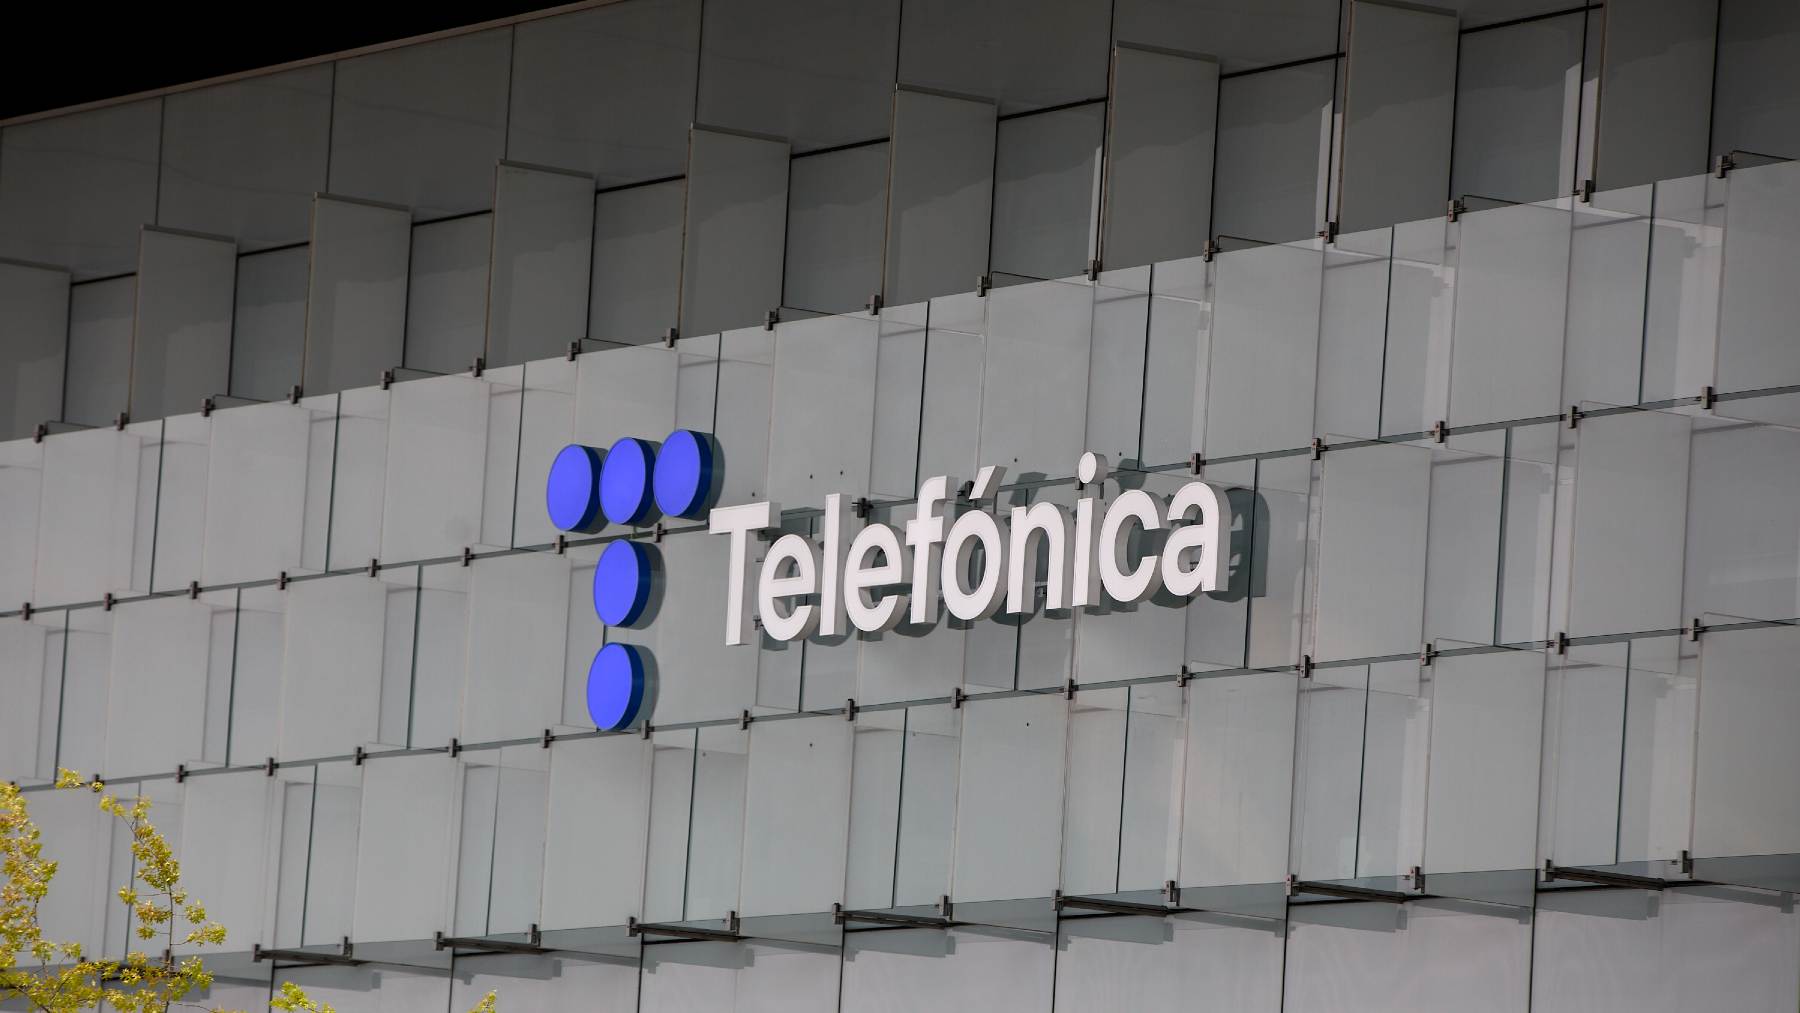 La compañía de telecomunicaciones Telefónica tiene planificado presentar sus nuevos productos y recomendaciones para el metaverso y web3 en el mes de septiembre